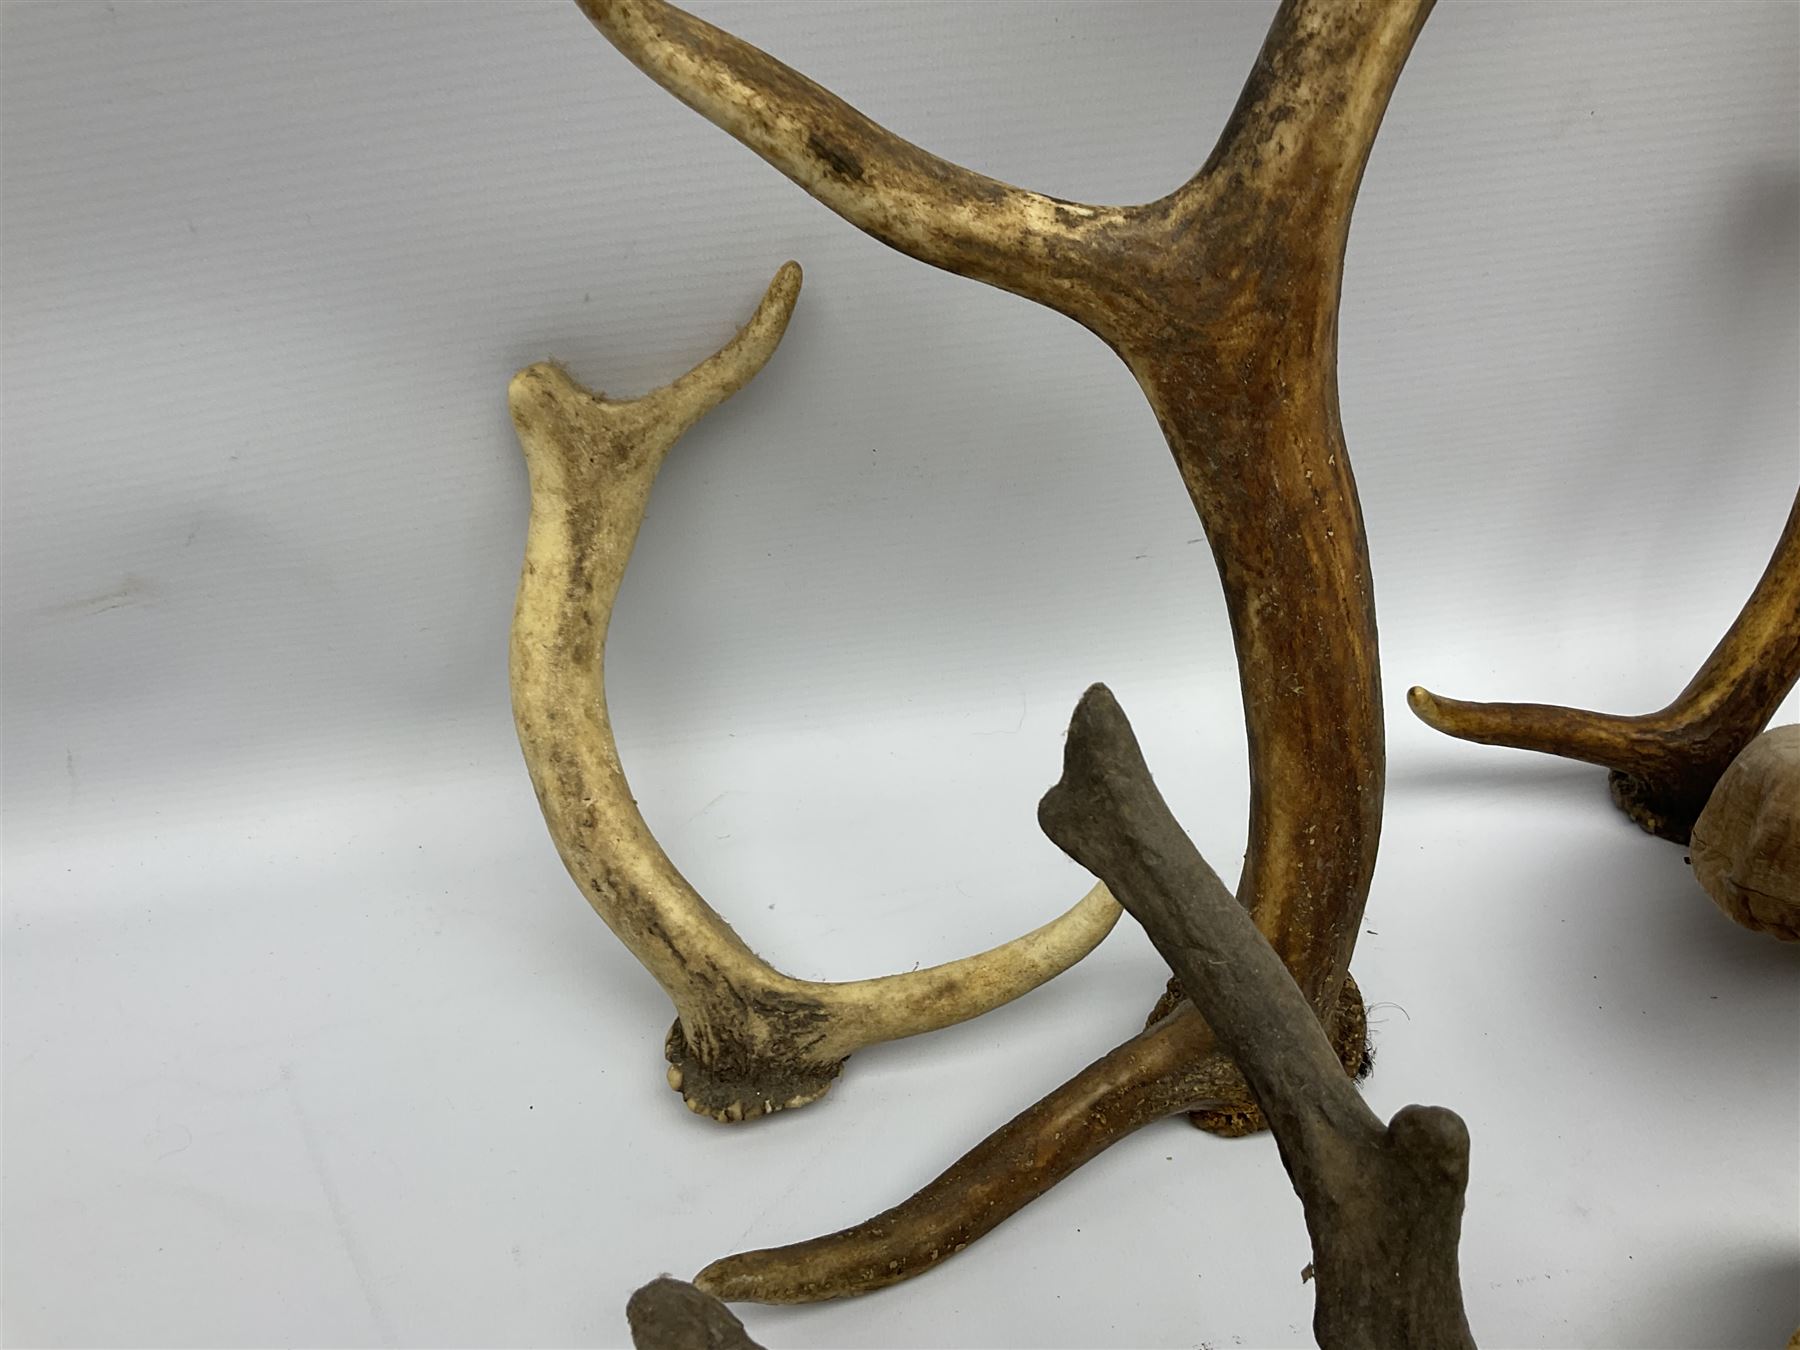 Antlers/Horns: two Roebuck Antlers with skull (Capreolus capreolus) - Image 6 of 10